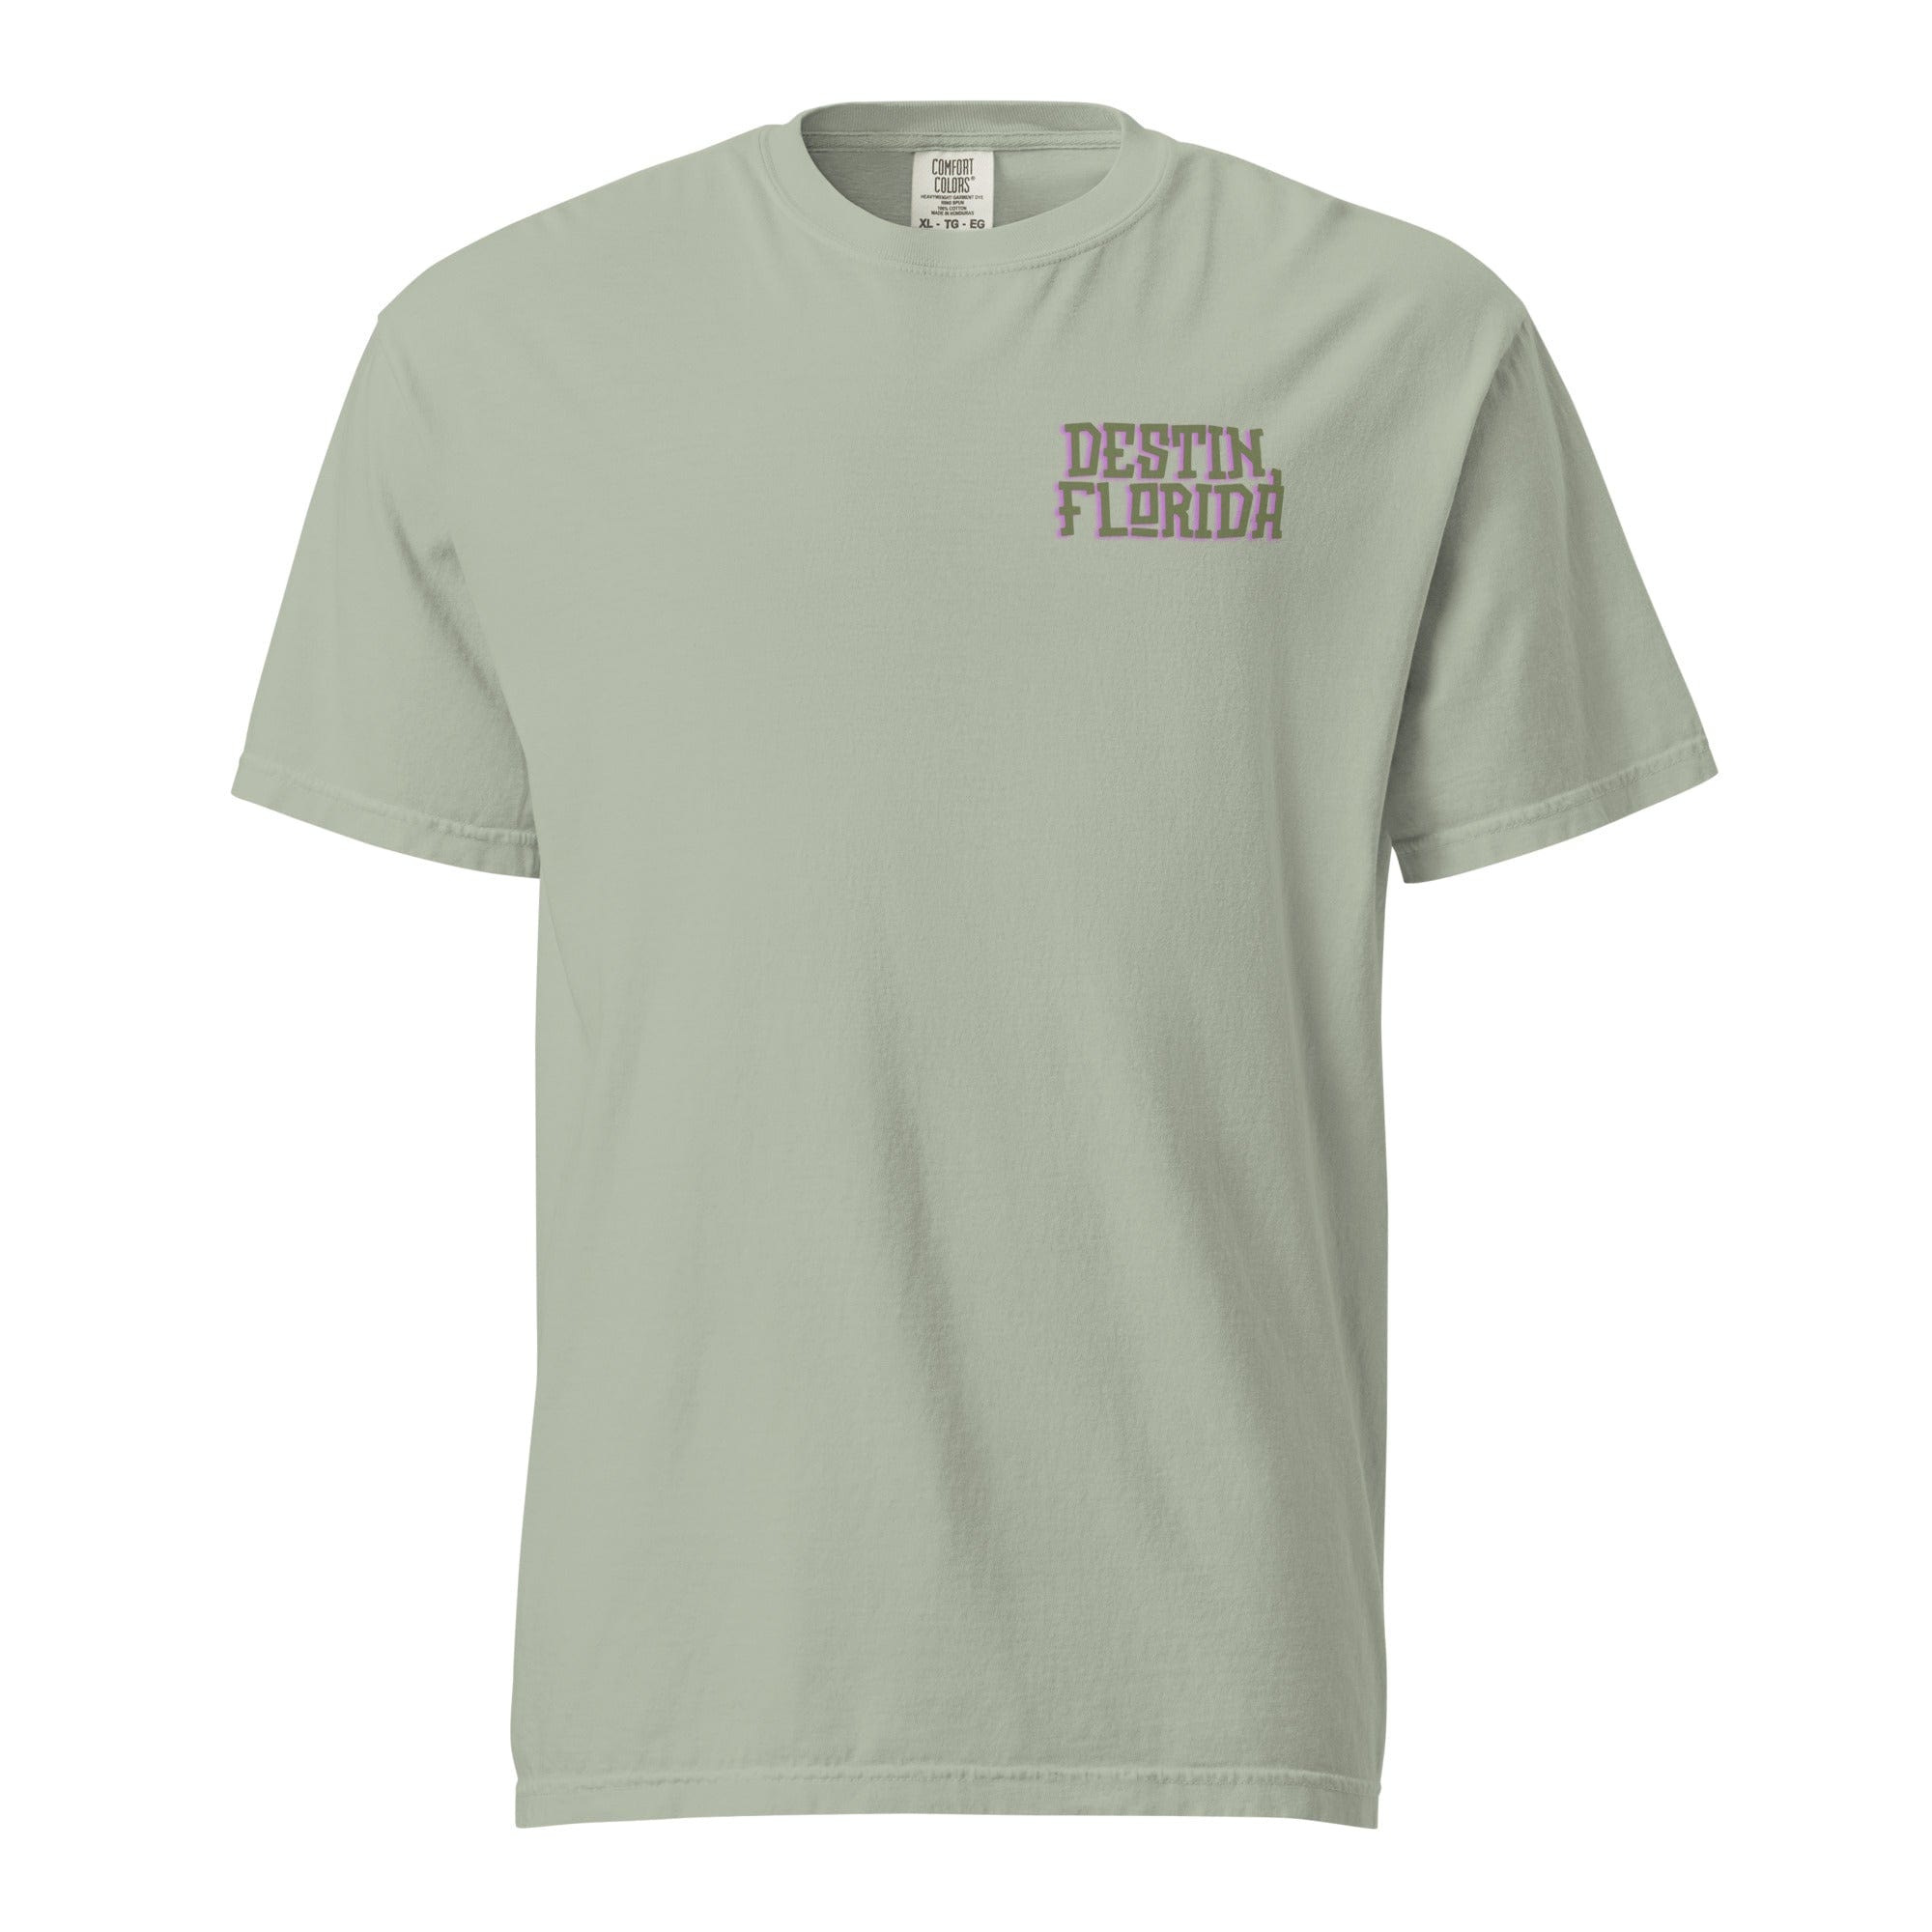 Destin, Florida Comfort T-shirt